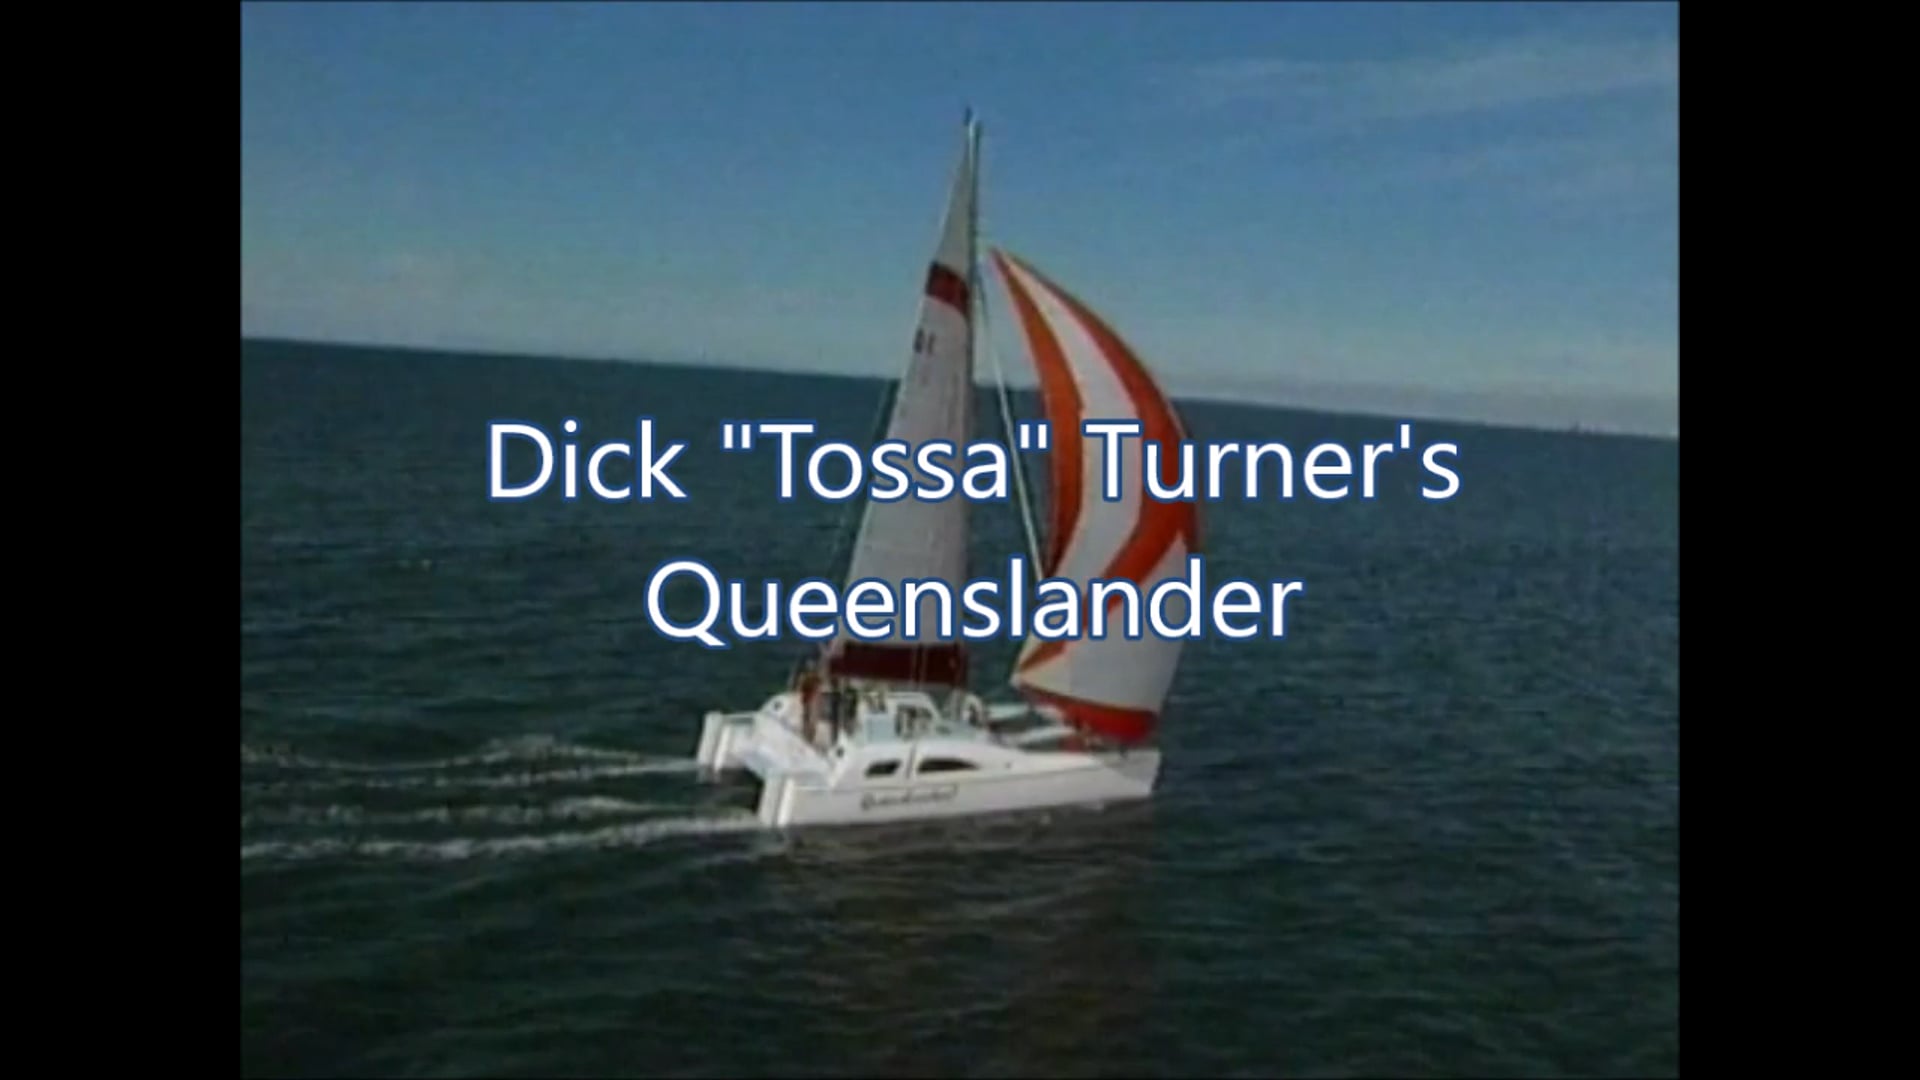 Tossa Turner’s Queenslander